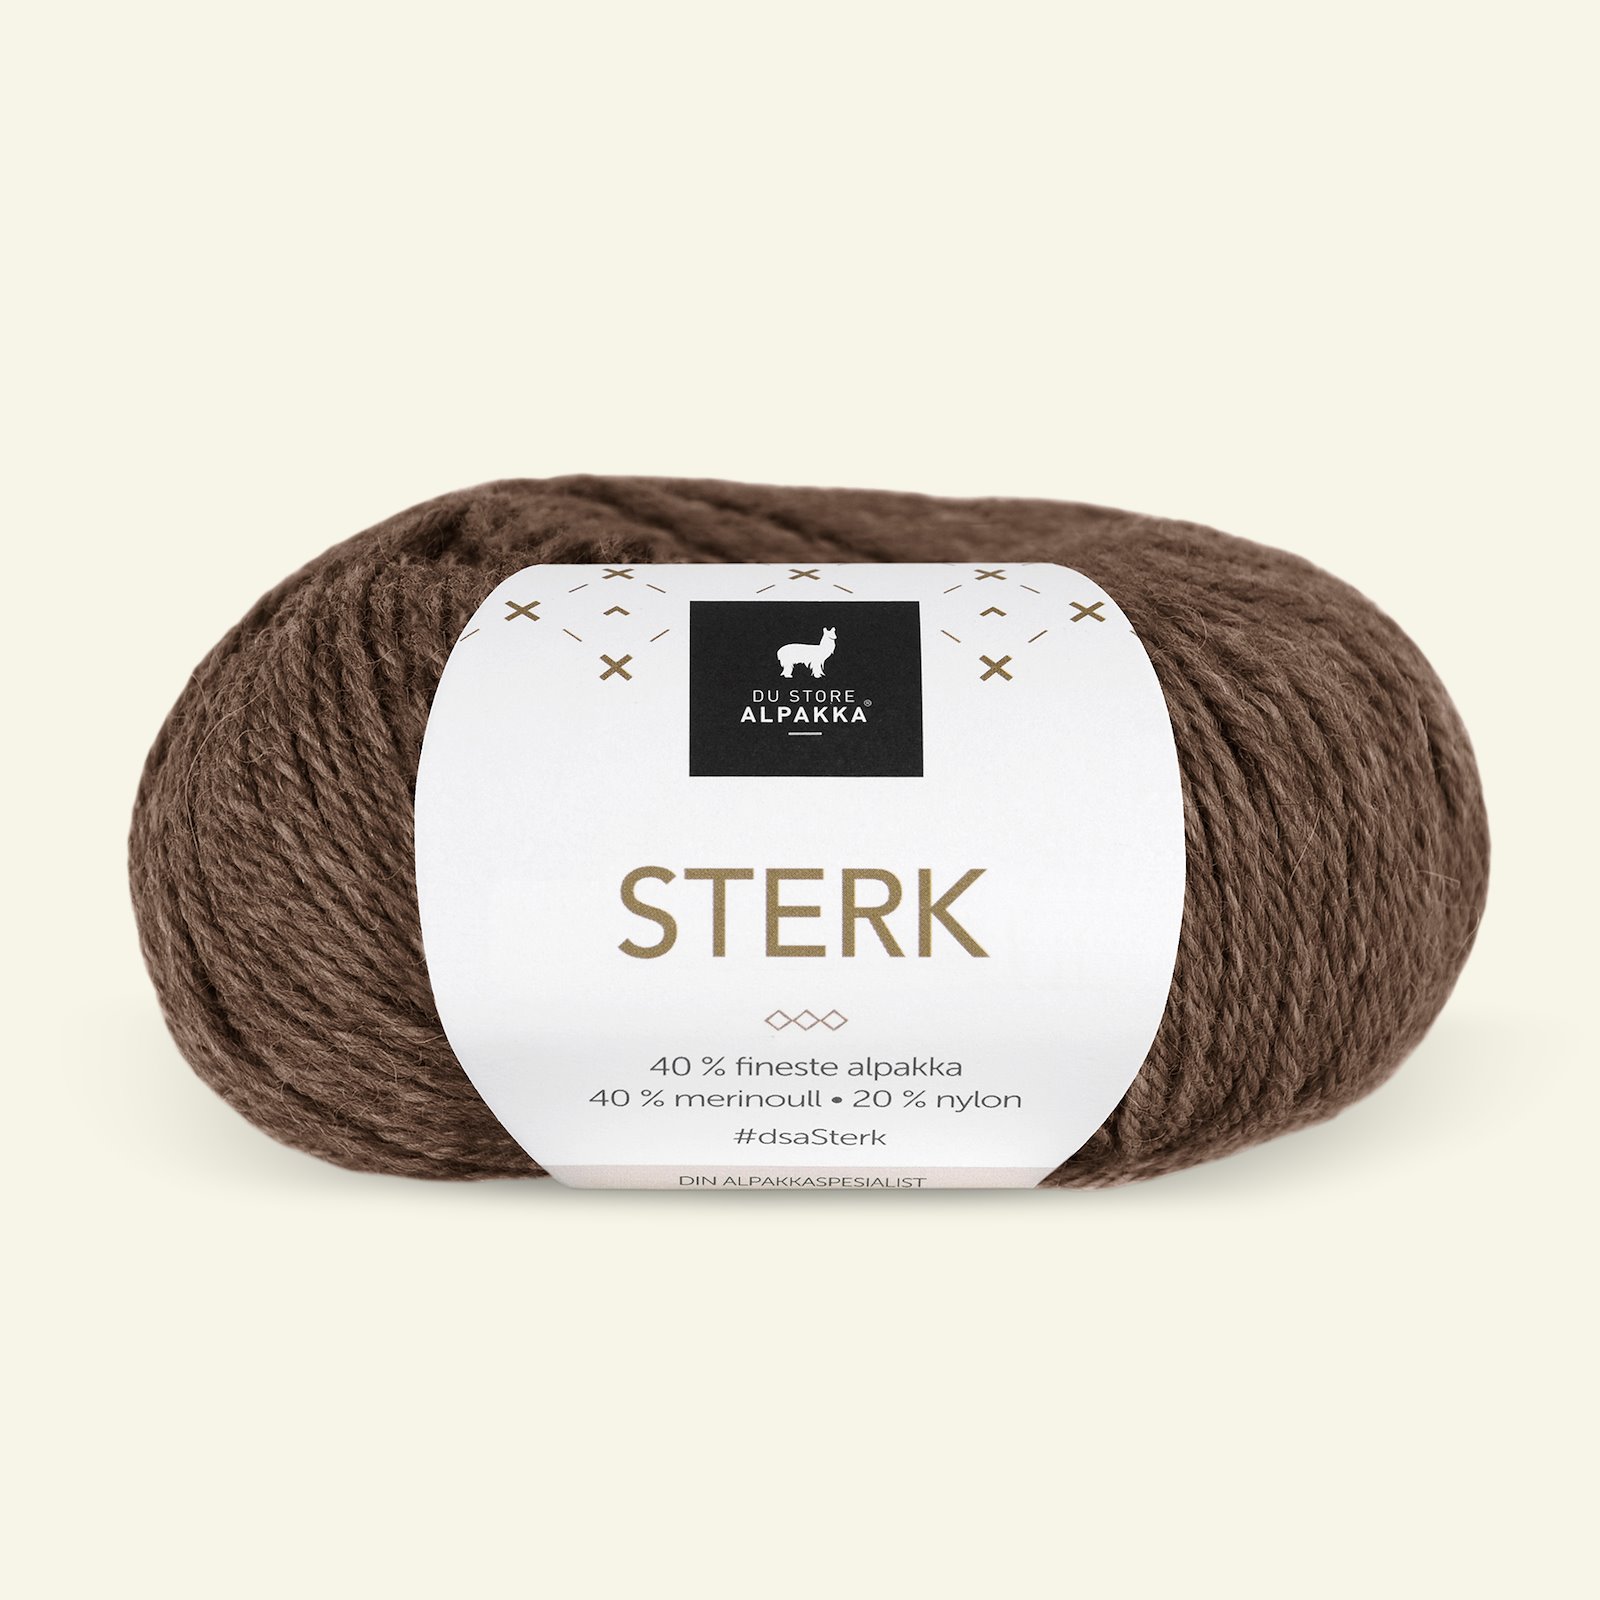 Du Store Alpakka, alpaca merino mixed yarn "Sterk", brown melange (824) 90000665_pack